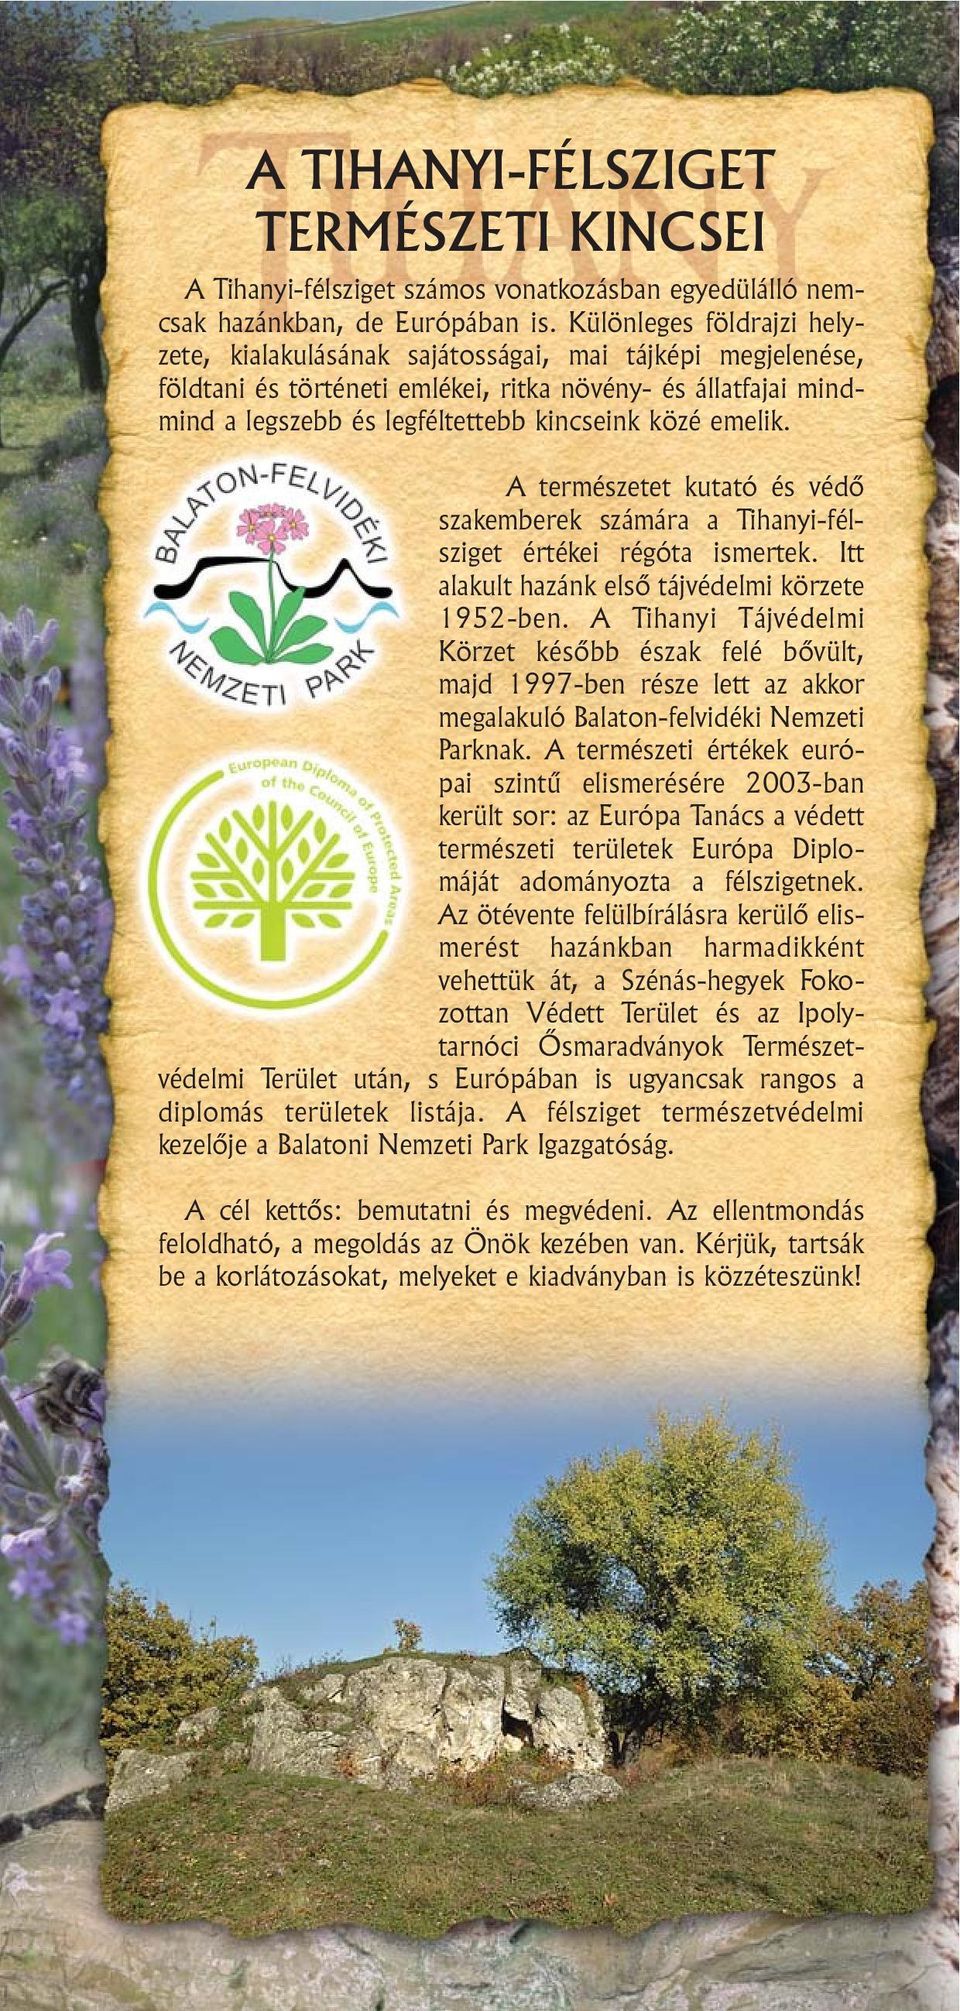 emelik. A természetet kutató és védõ szakemberek számára a Tihanyi-félsziget értékei régóta ismertek. Itt alakult hazánk elsõ tájvédelmi körzete 1952-ben.